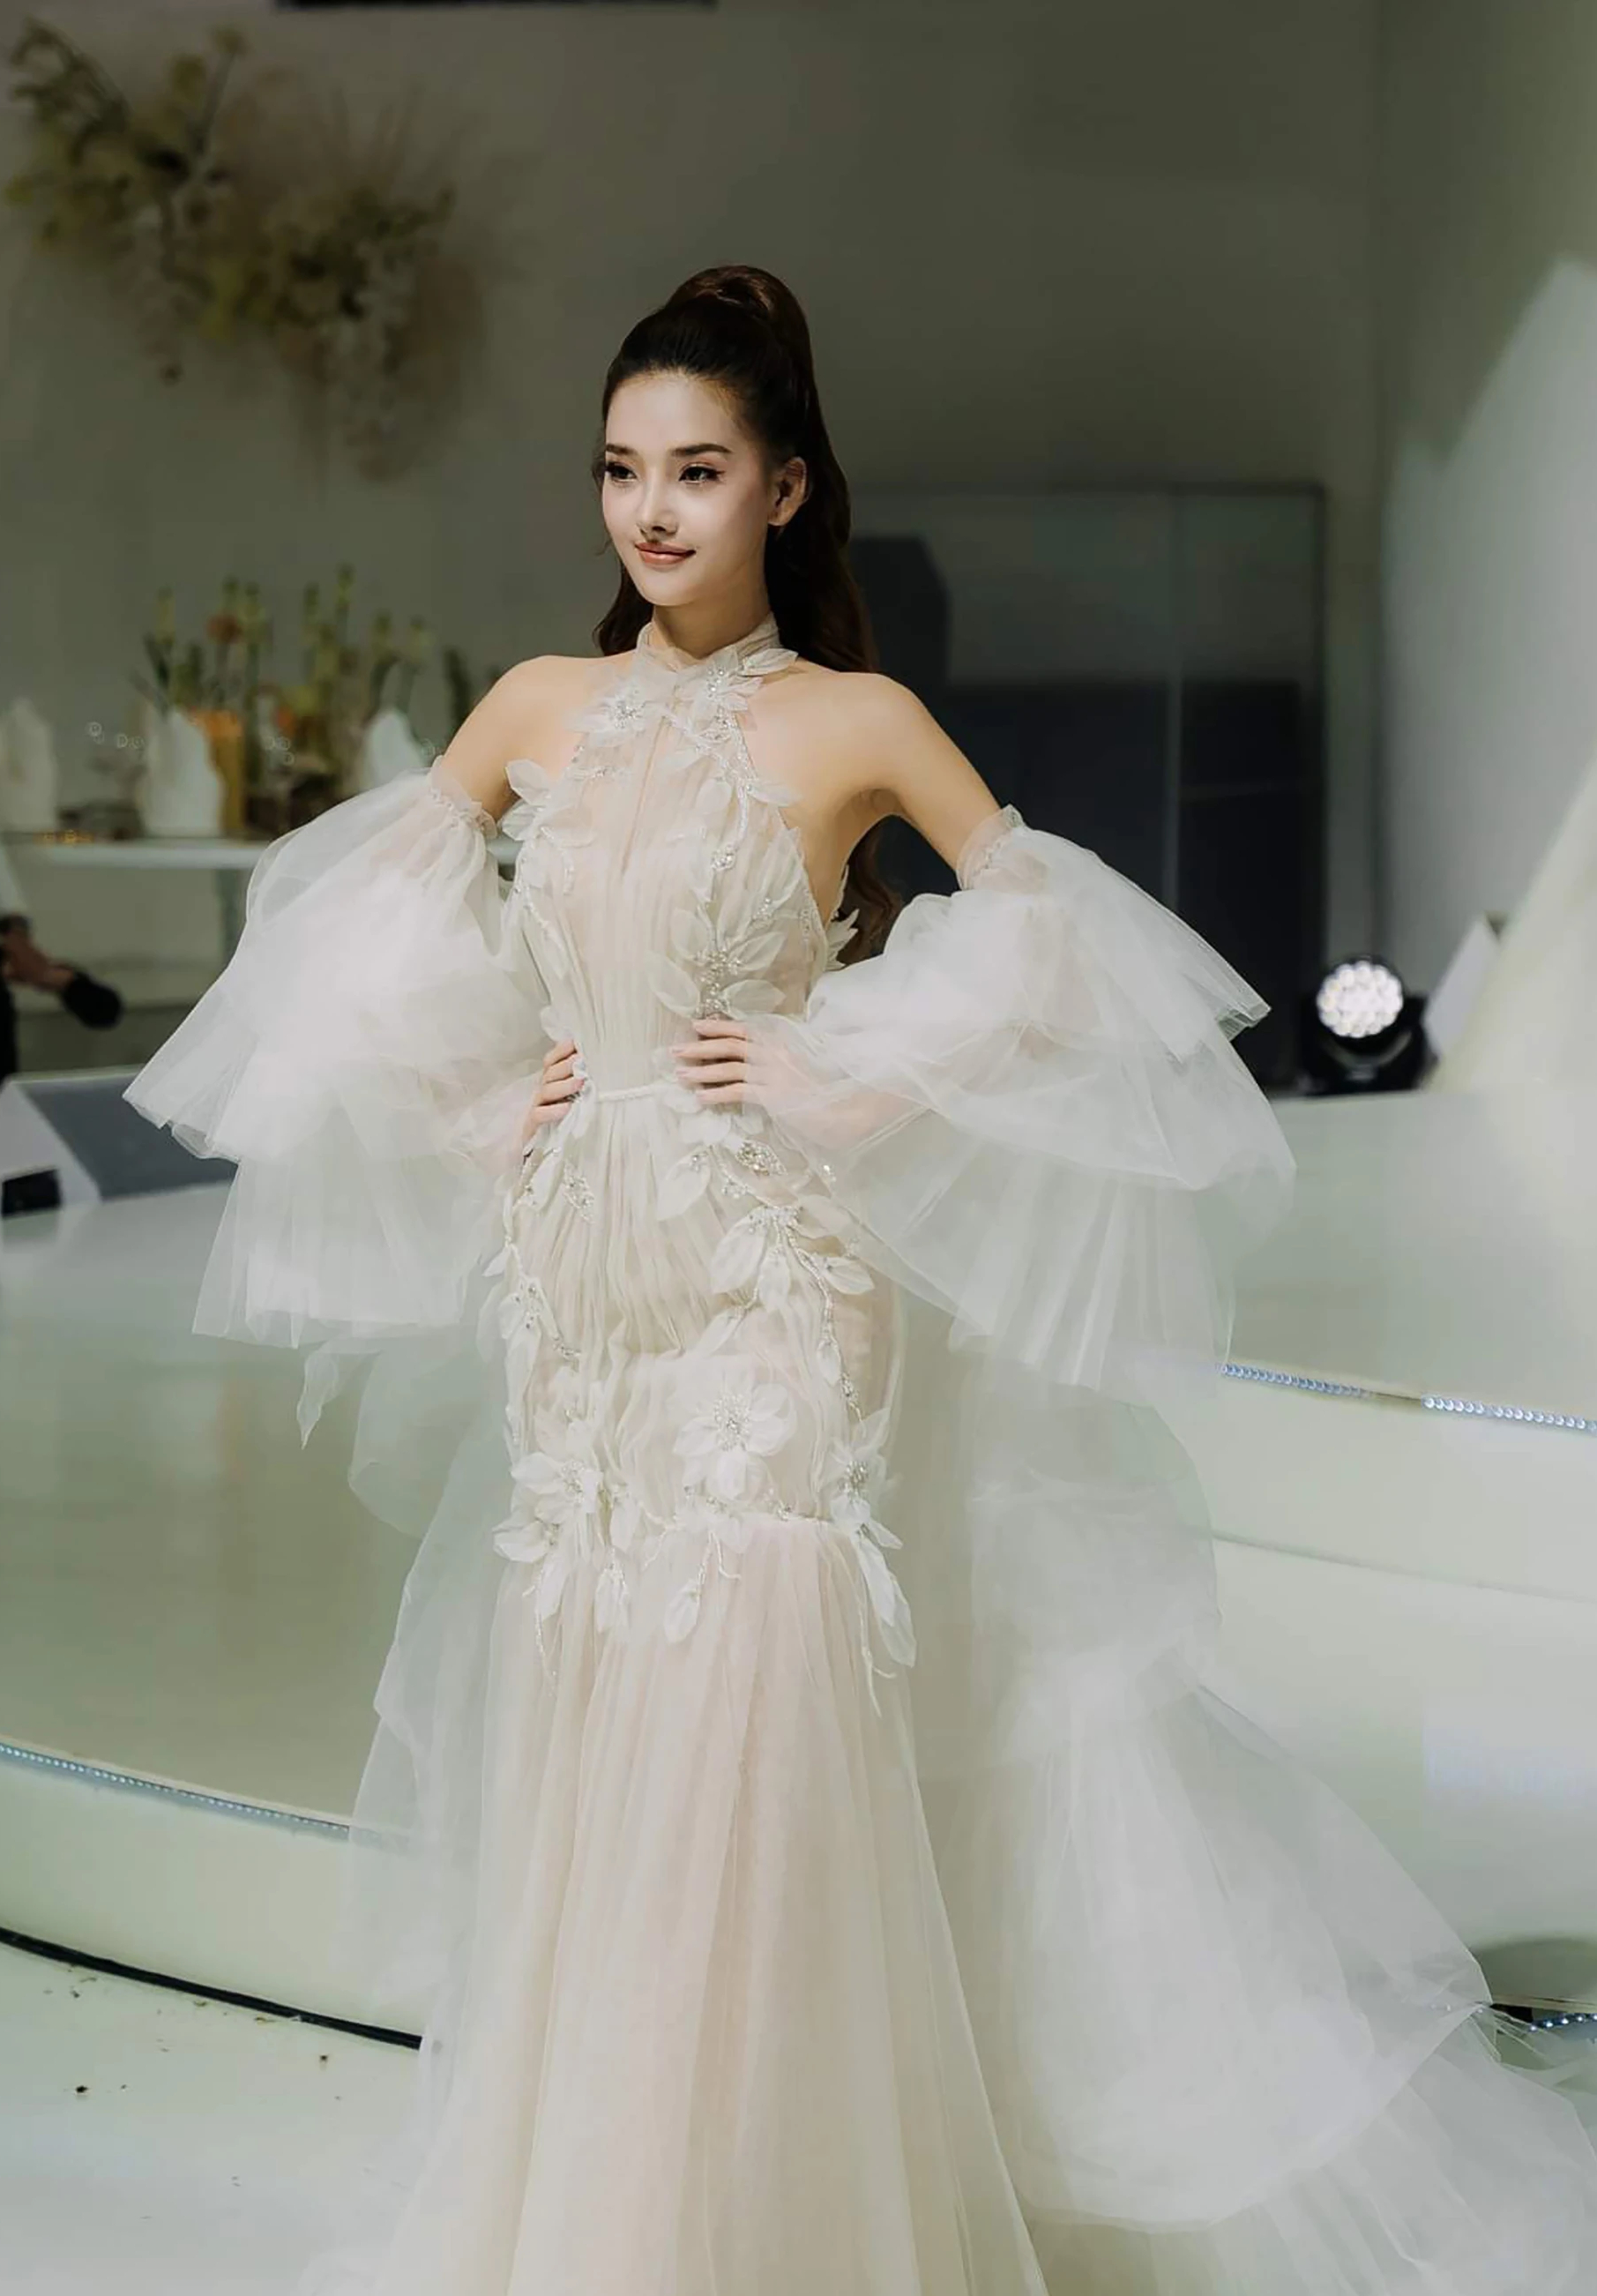 Á hậu Thủy Tiên trình diễn áo cưới cùng Hoa hậu đẹp nhất châu Á 2009 - Ảnh 8.